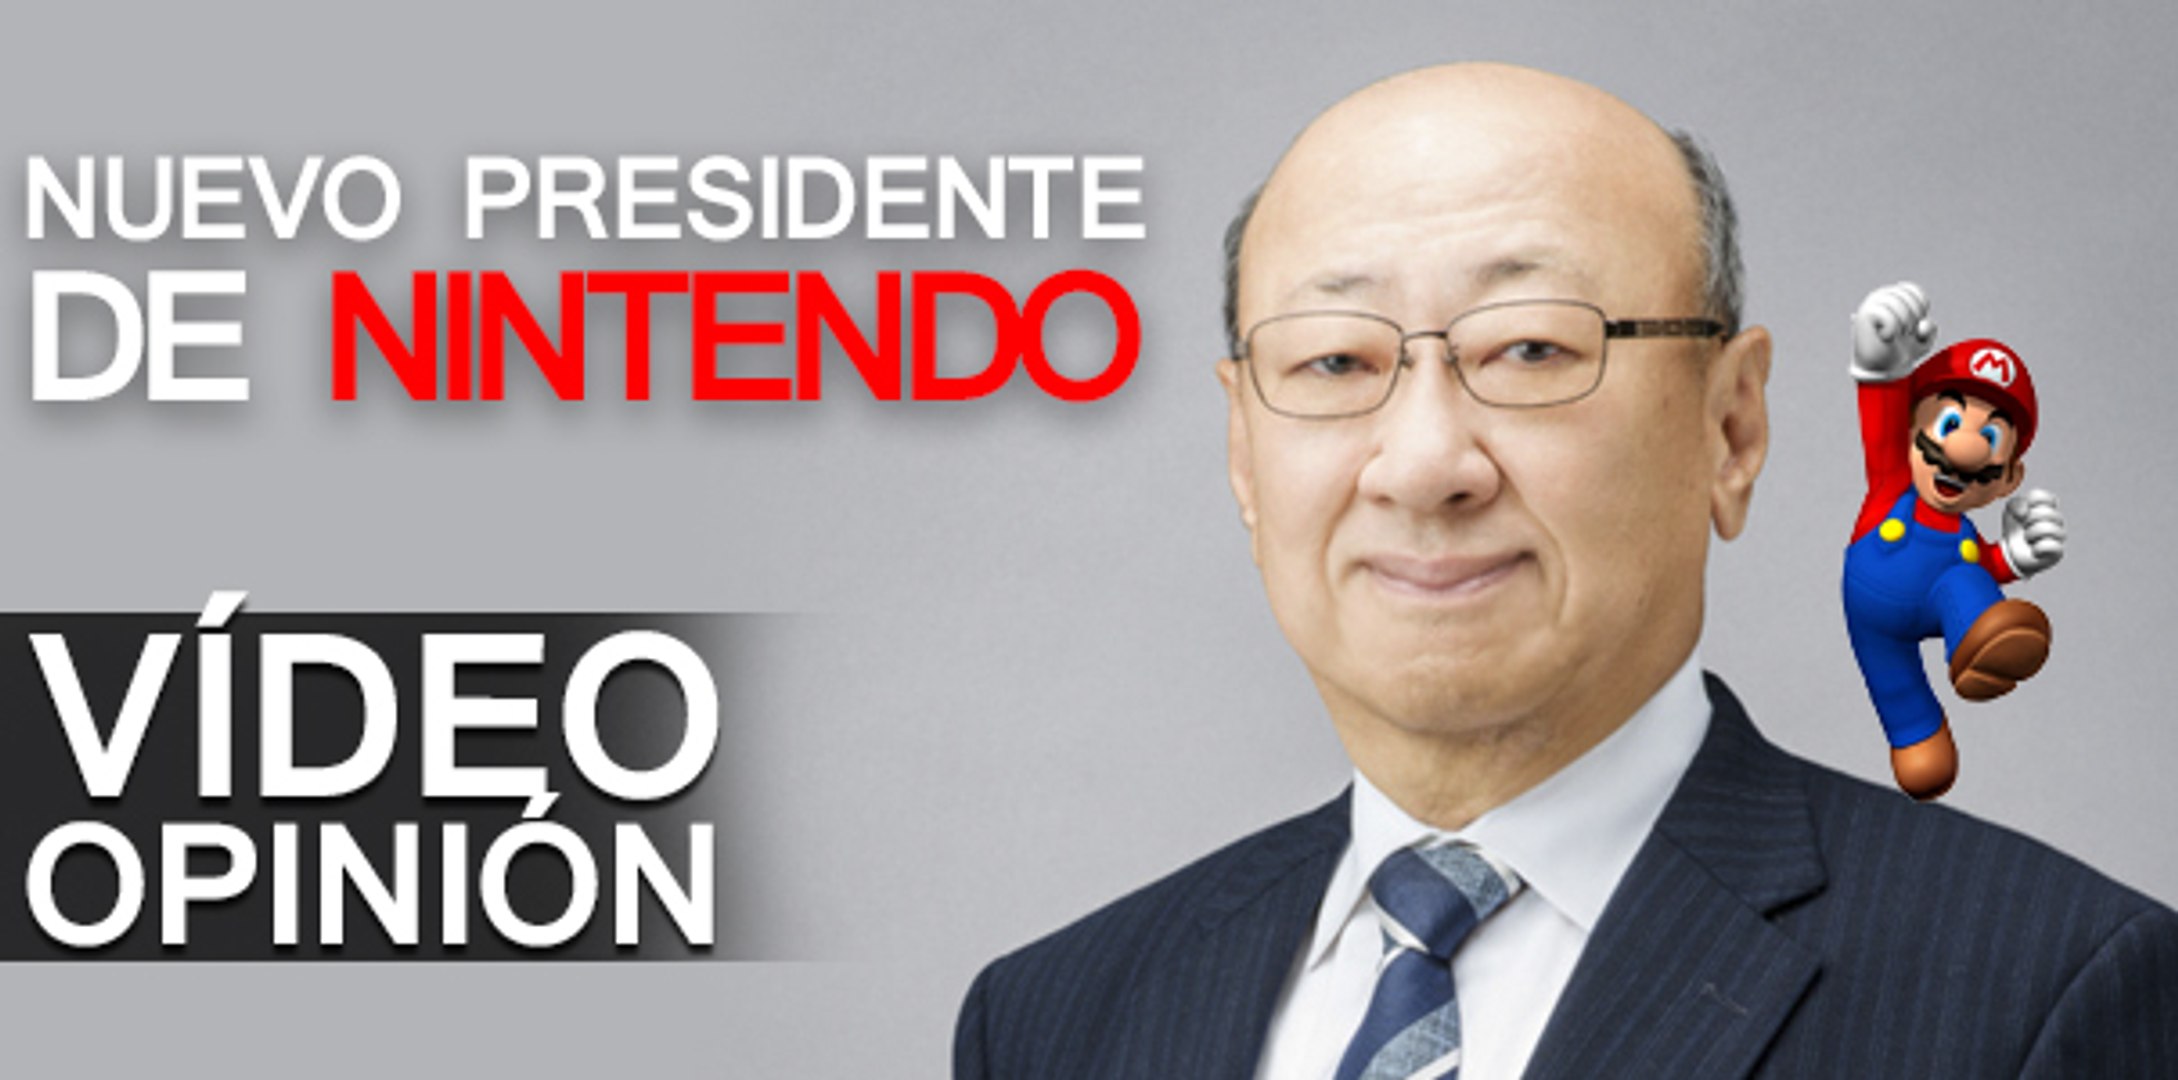 Vídeo opinión: El nuevo presidente de Nintendo - Vídeo Dailymotion